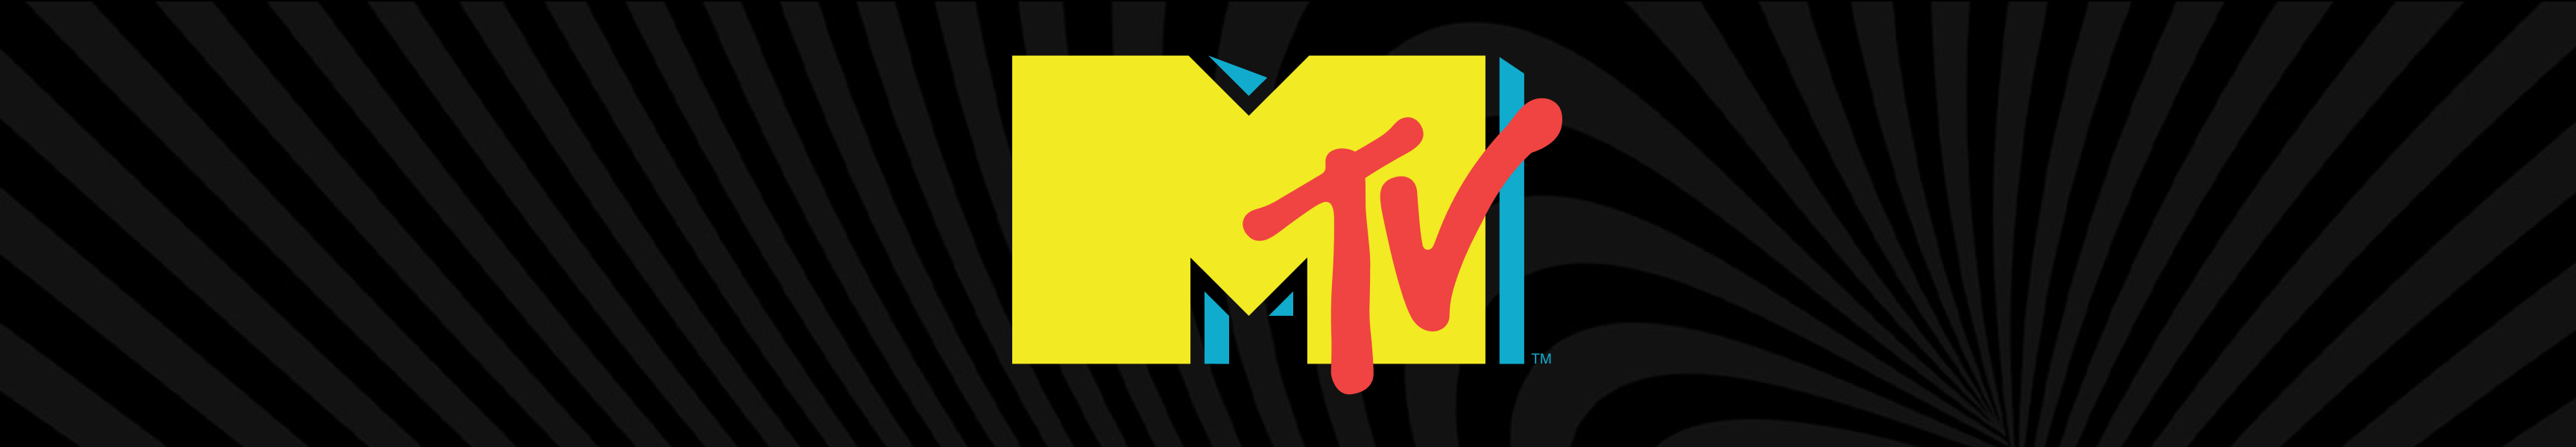 Chapeaux MTV